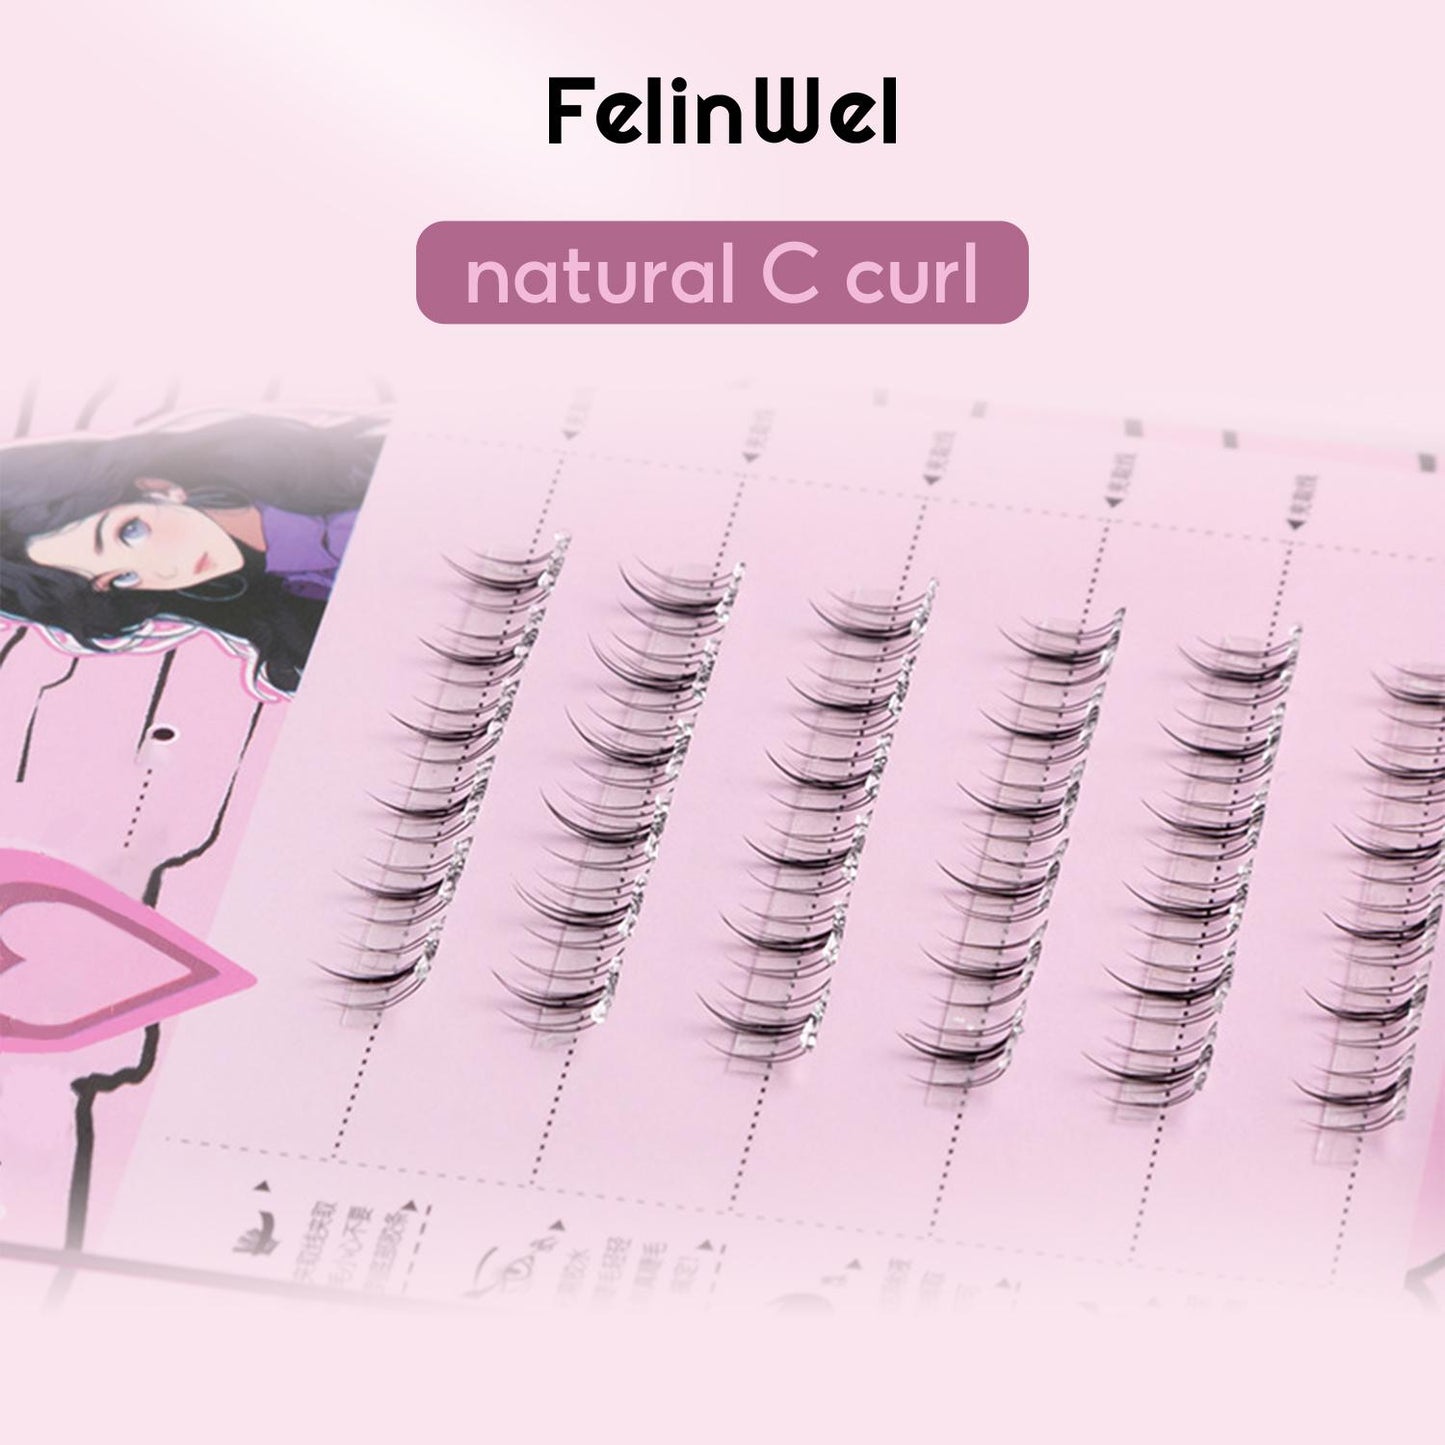 FelinWel - Self-adhesive False Lower Eyelashes, Glue-free, Reusable